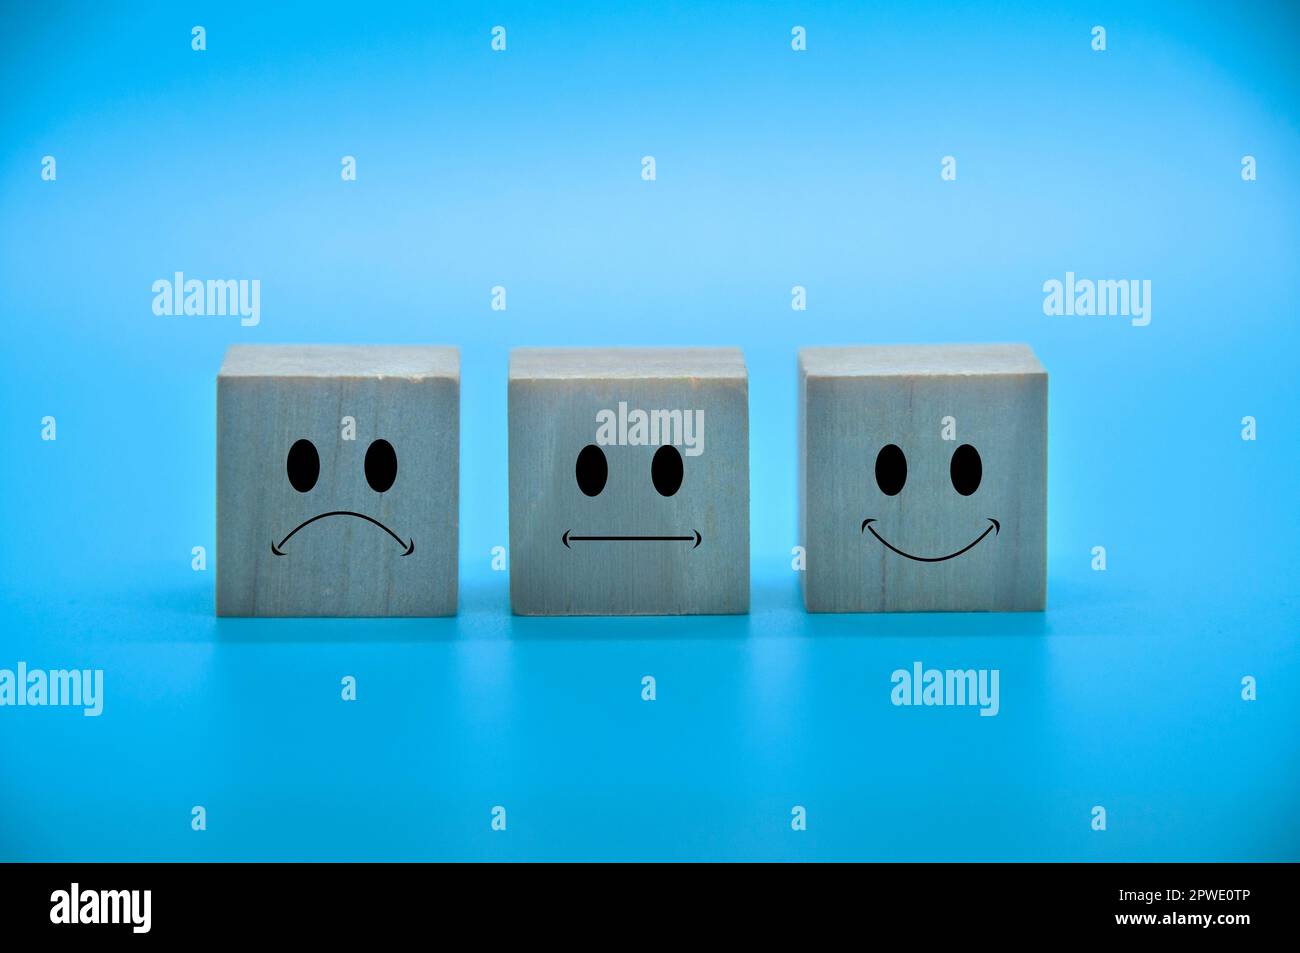 Faccine di emoticon tristi, neutrali e felici su cubi di legno con copertura di fondo blu. Soddisfazione del cliente e concetto di valutazione Foto Stock